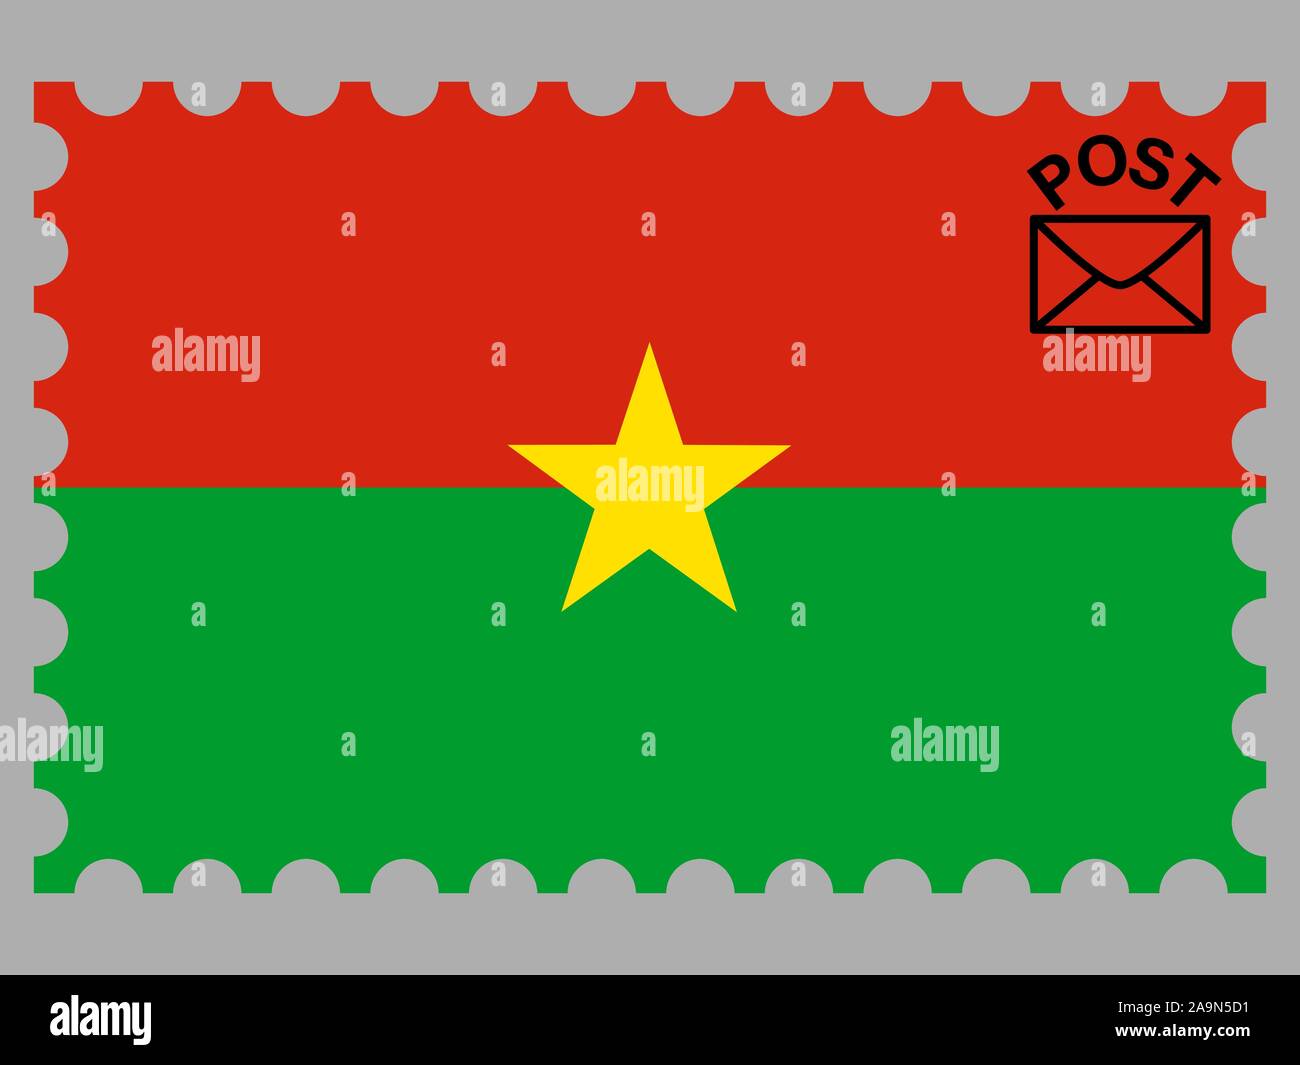 Drapeau national du Burkina Faso. couleurs d'origine et de proportion. Vector illustration eps10 simplement, en provenance de pays. Illustration de Vecteur